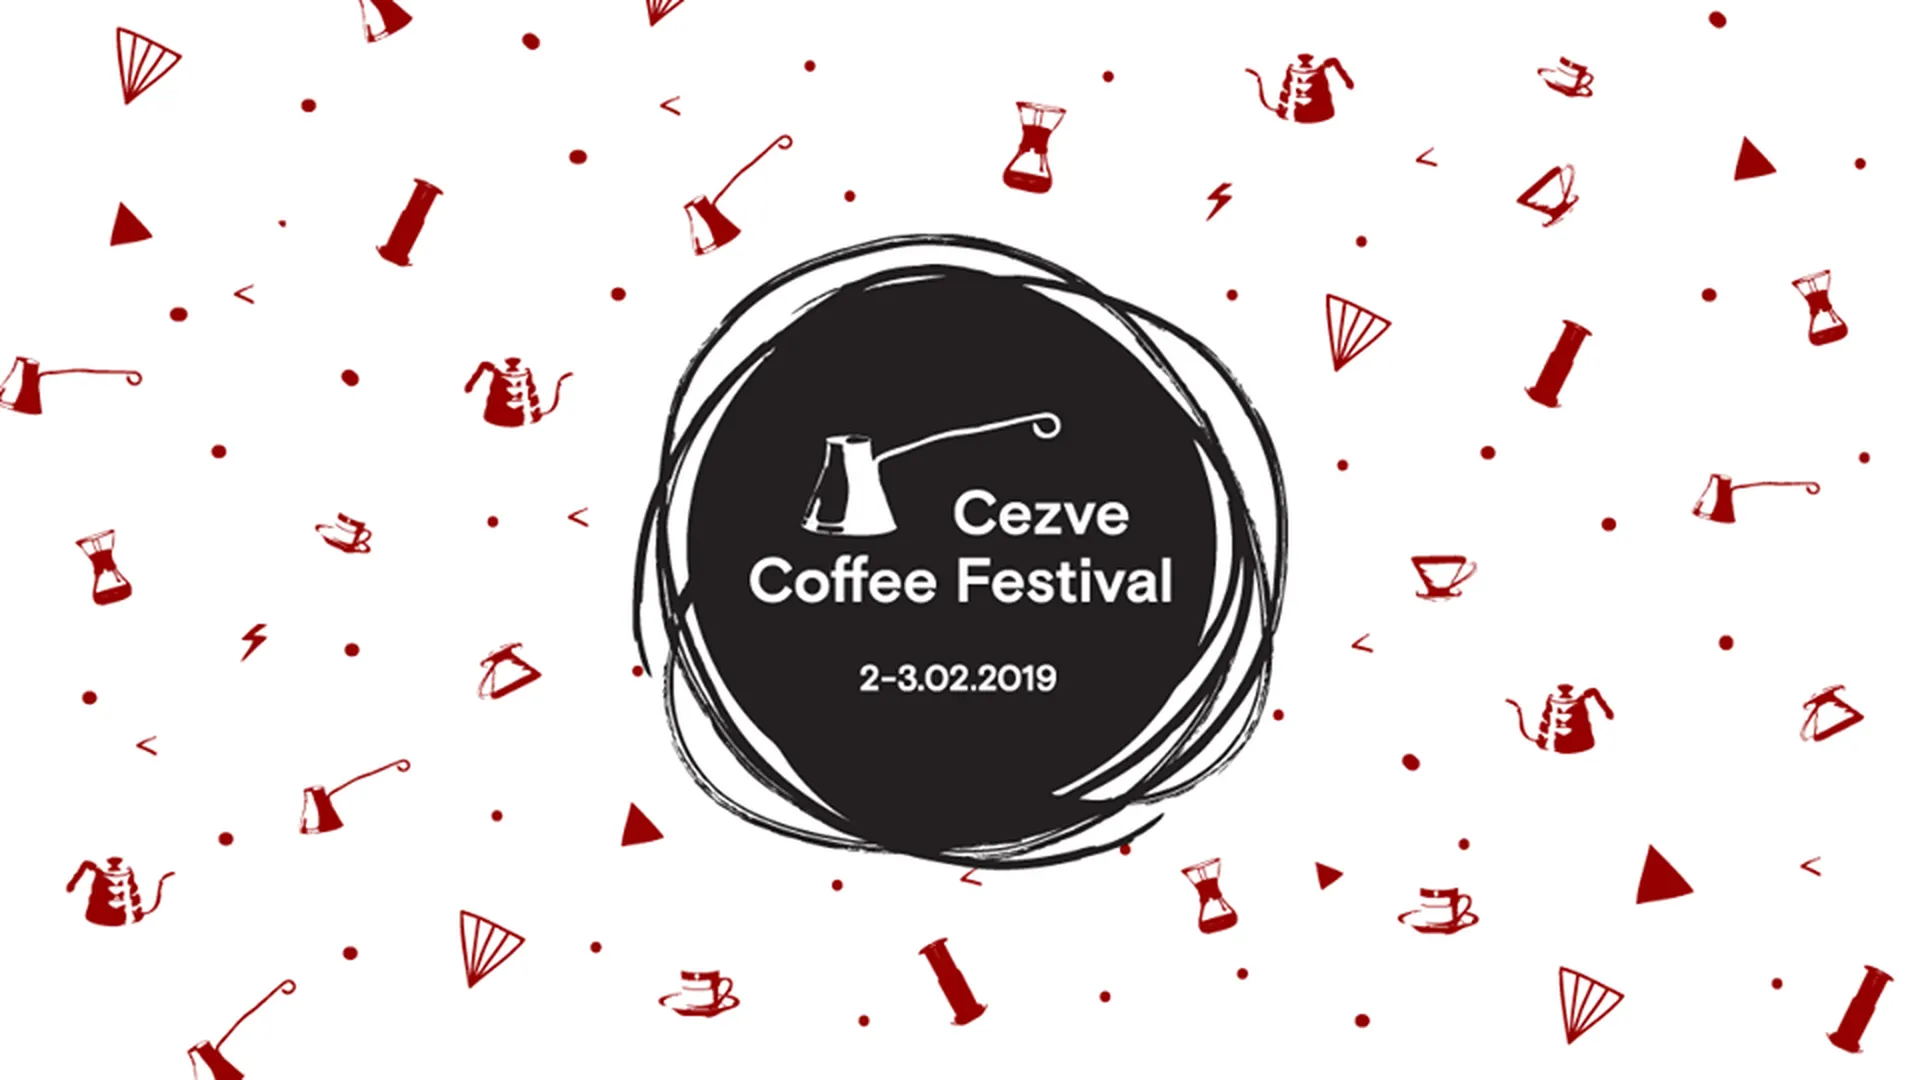 страница Cezve Coffee Festival в социальной сети Facebook